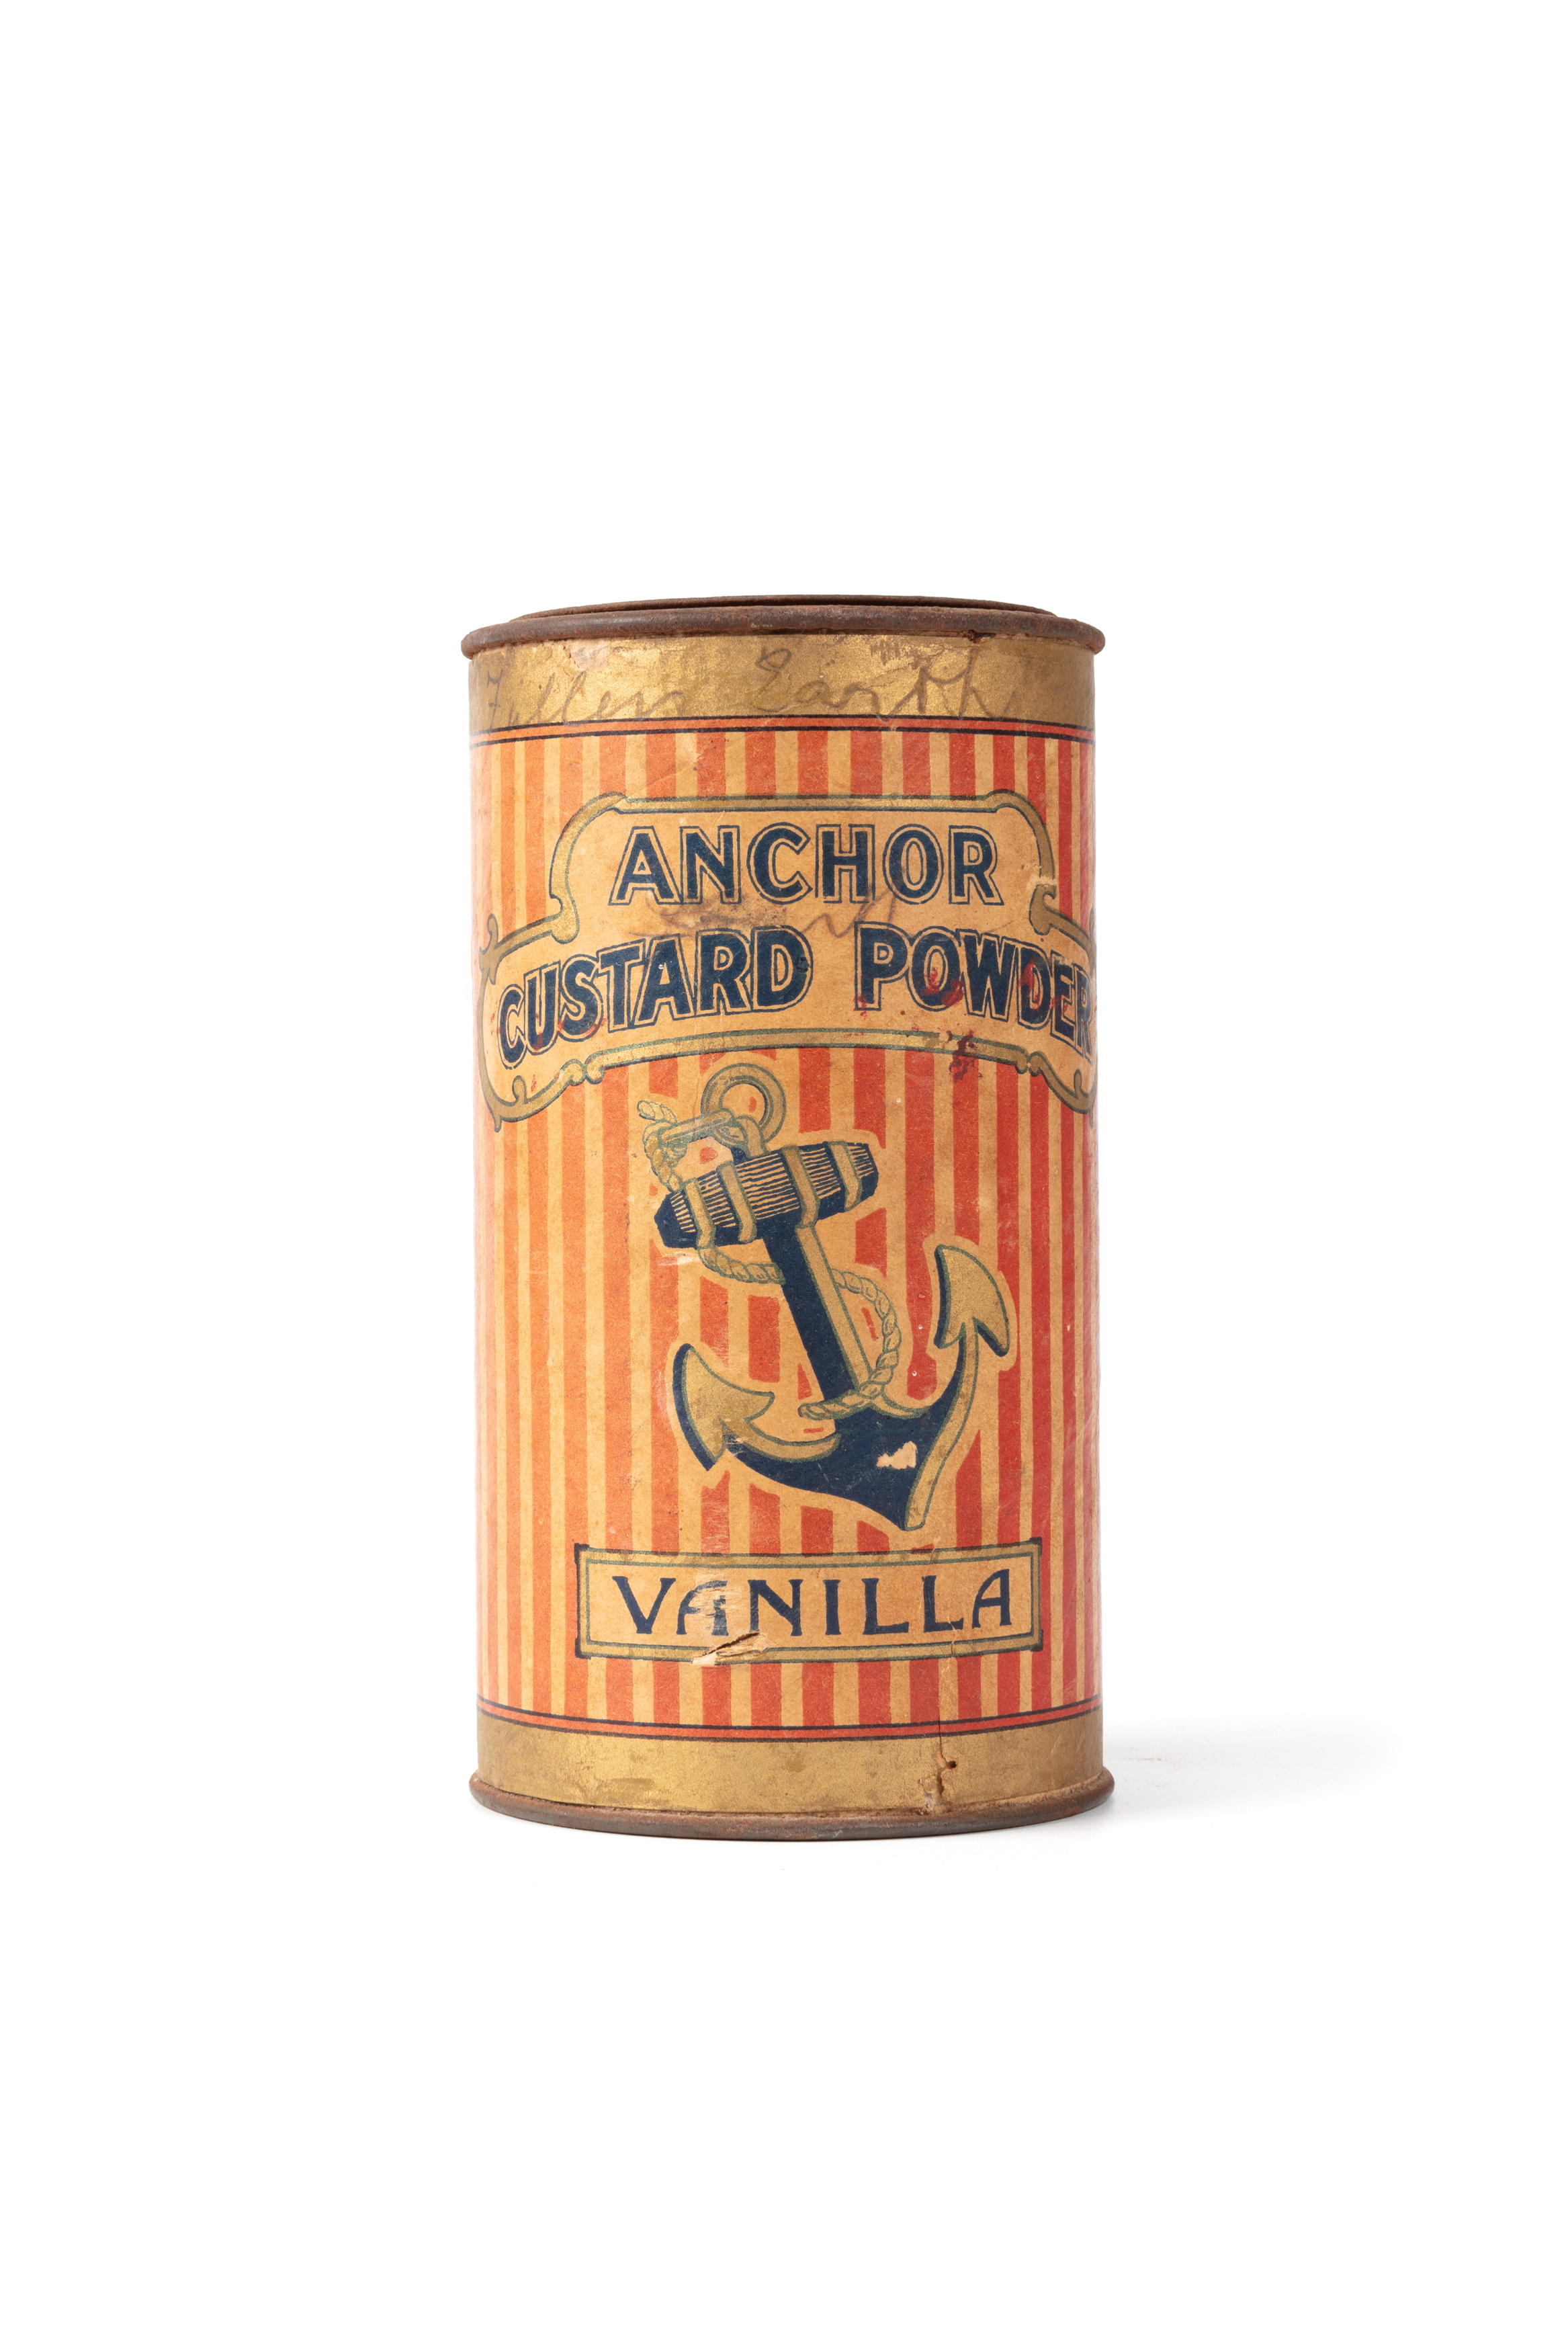 'Anchor' custard powder tin